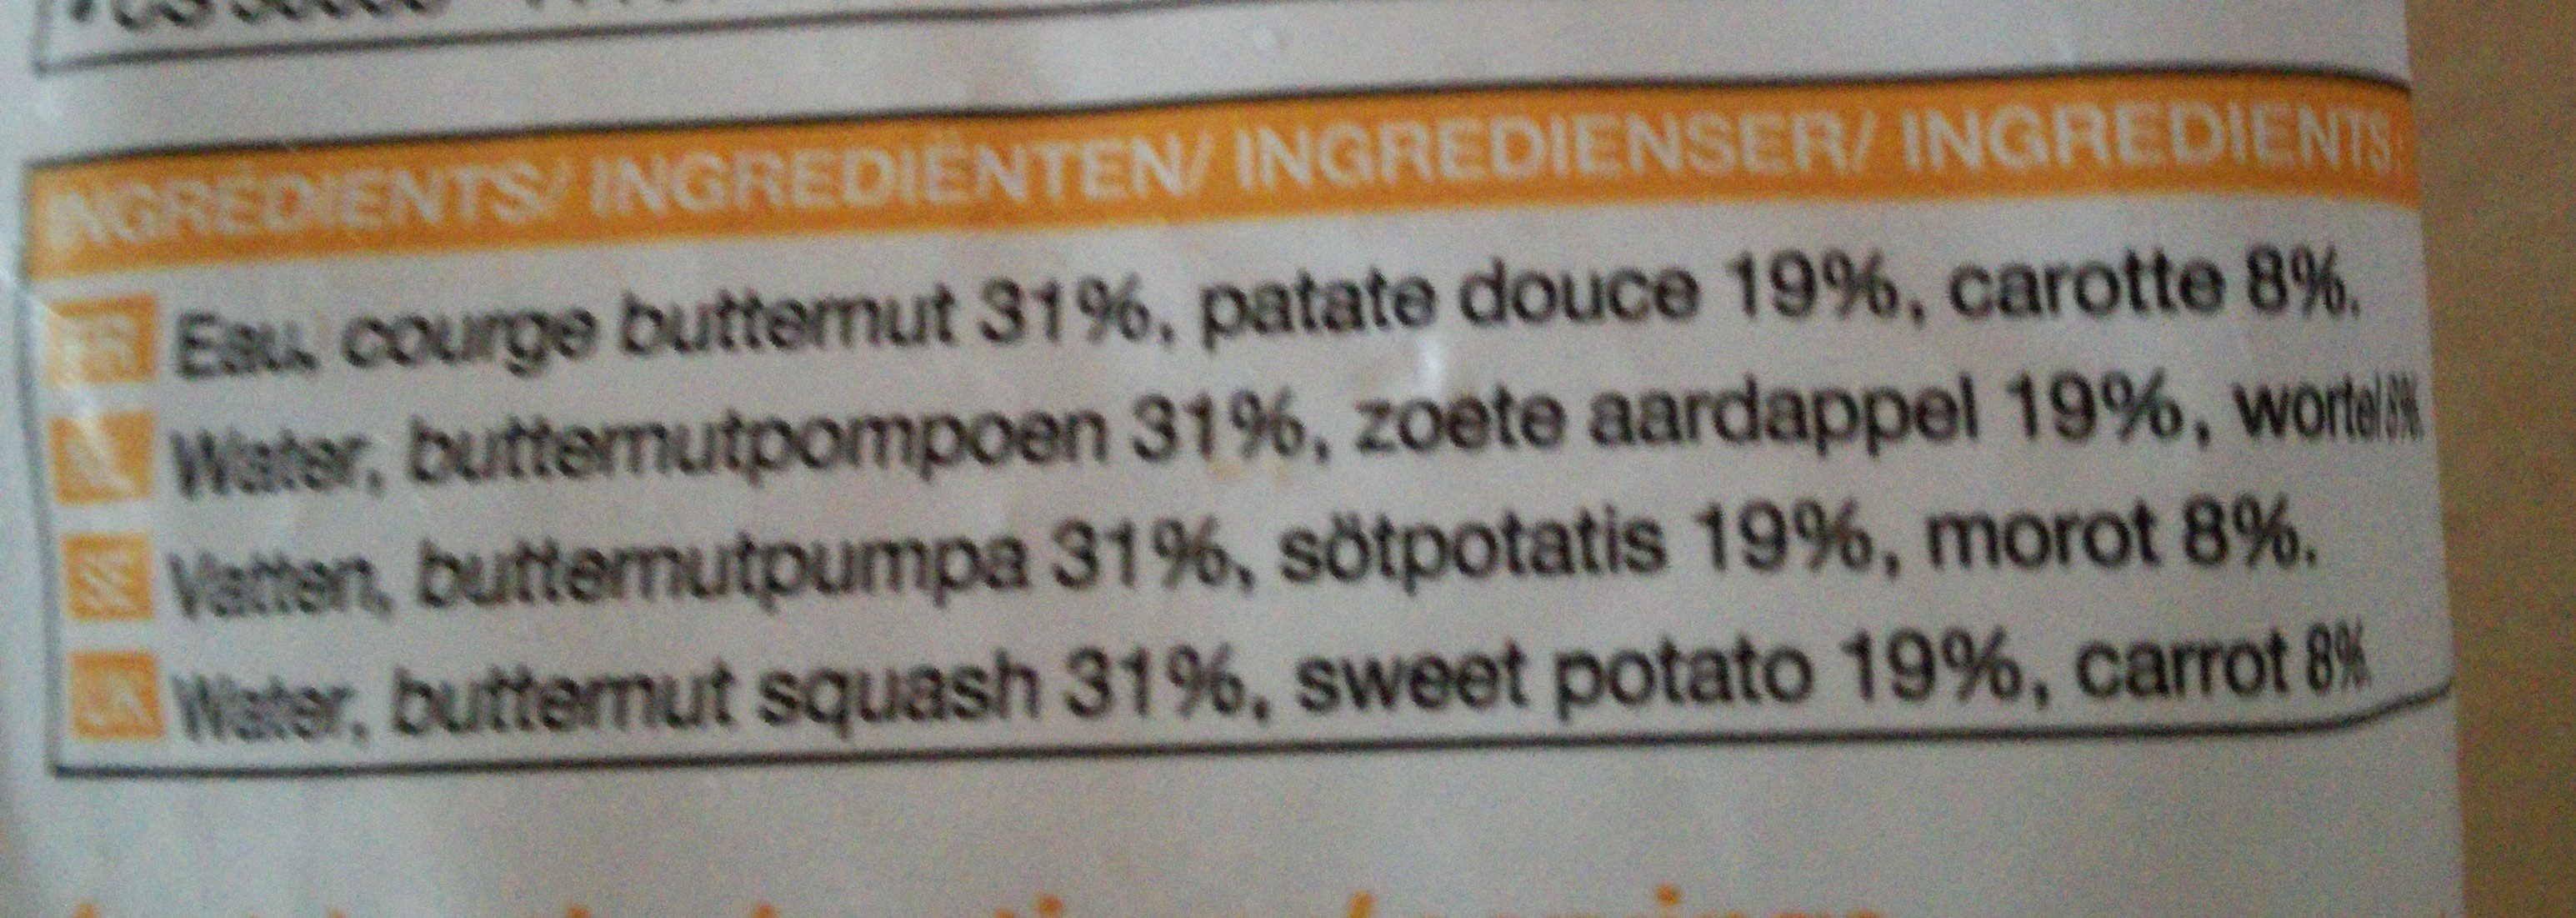 Potage courge butternut, patate douce et carotte - Ingrédients